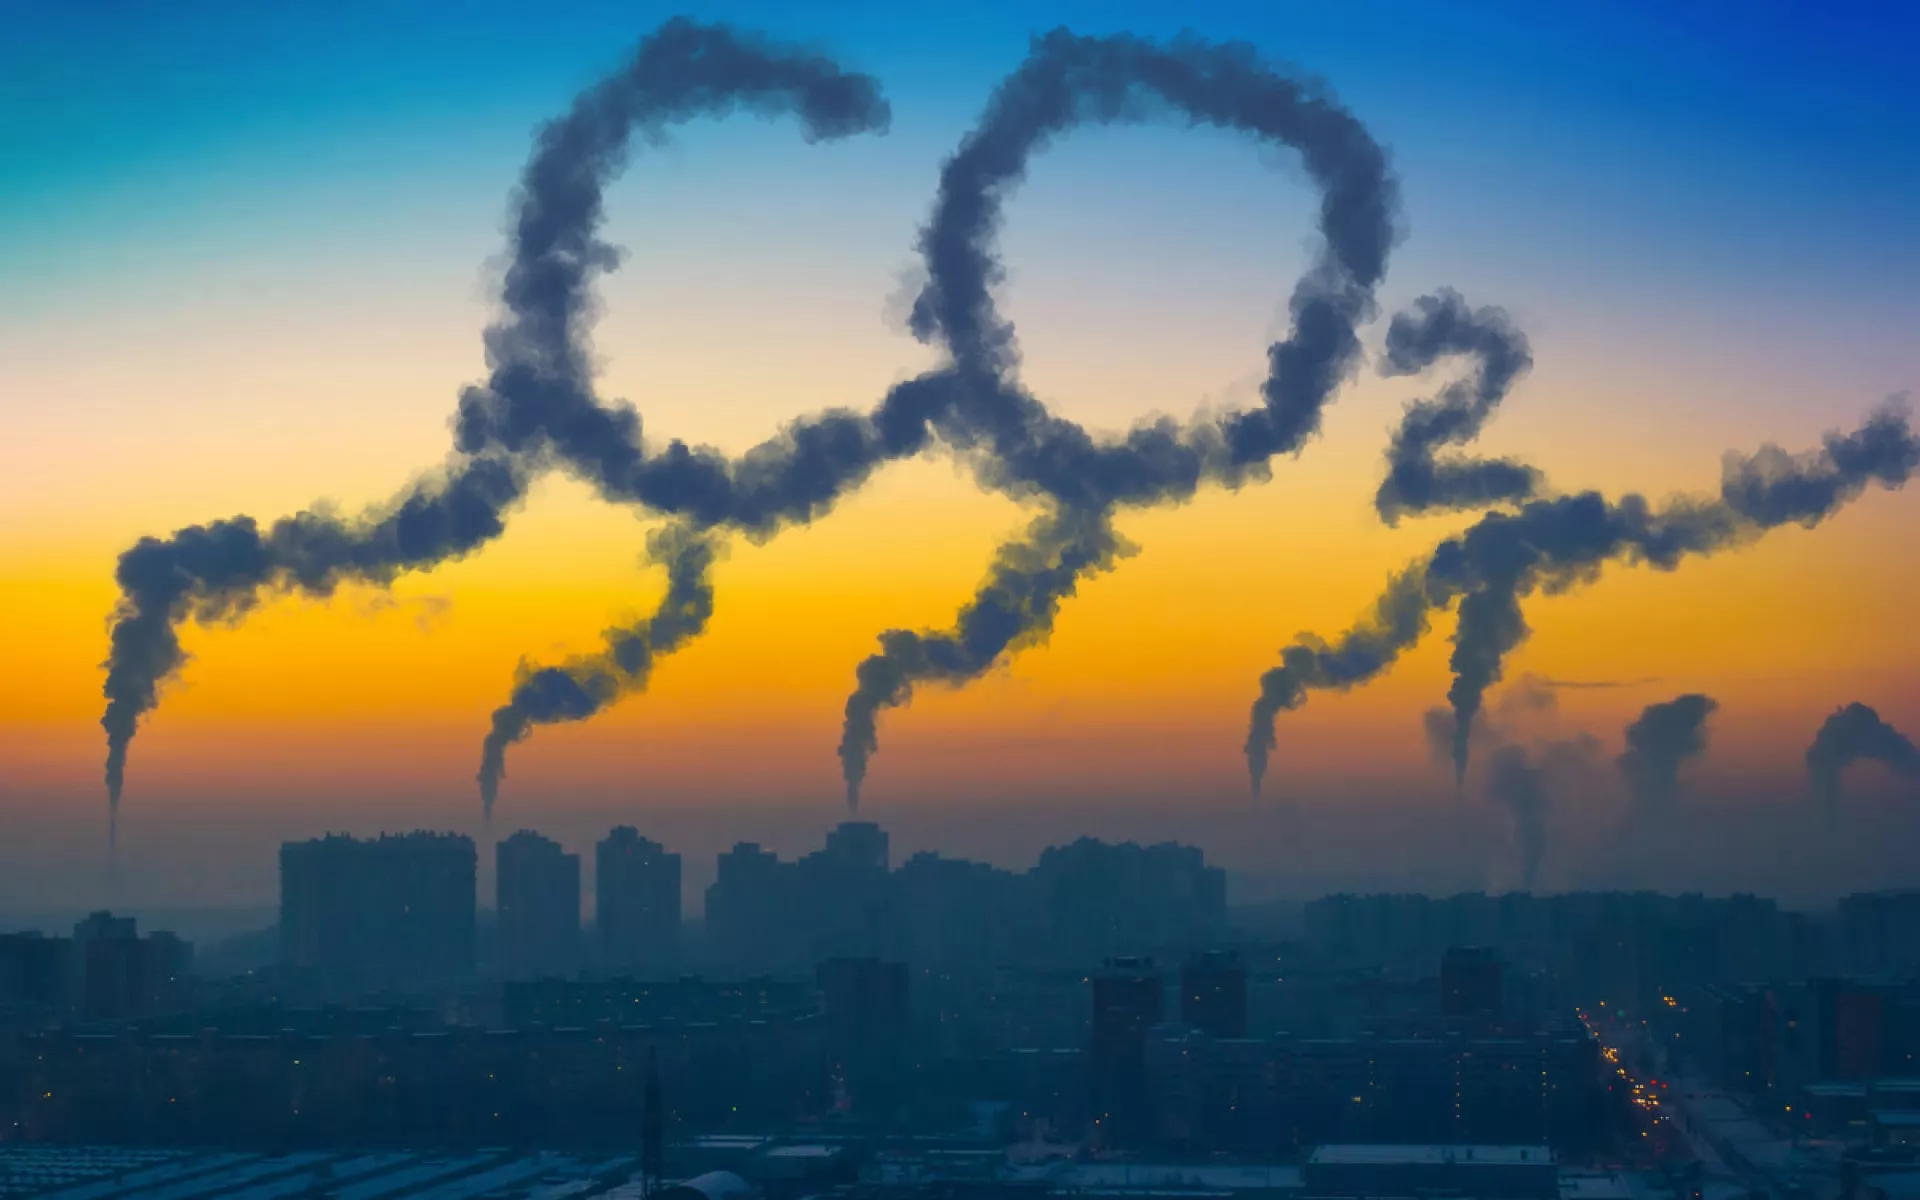 Die Skyline einer Stadt mit aufsteigendem Qualm aus Schornsteinen. Der Qualm zeichnet den Schriftzug CO2 in den Himmel.